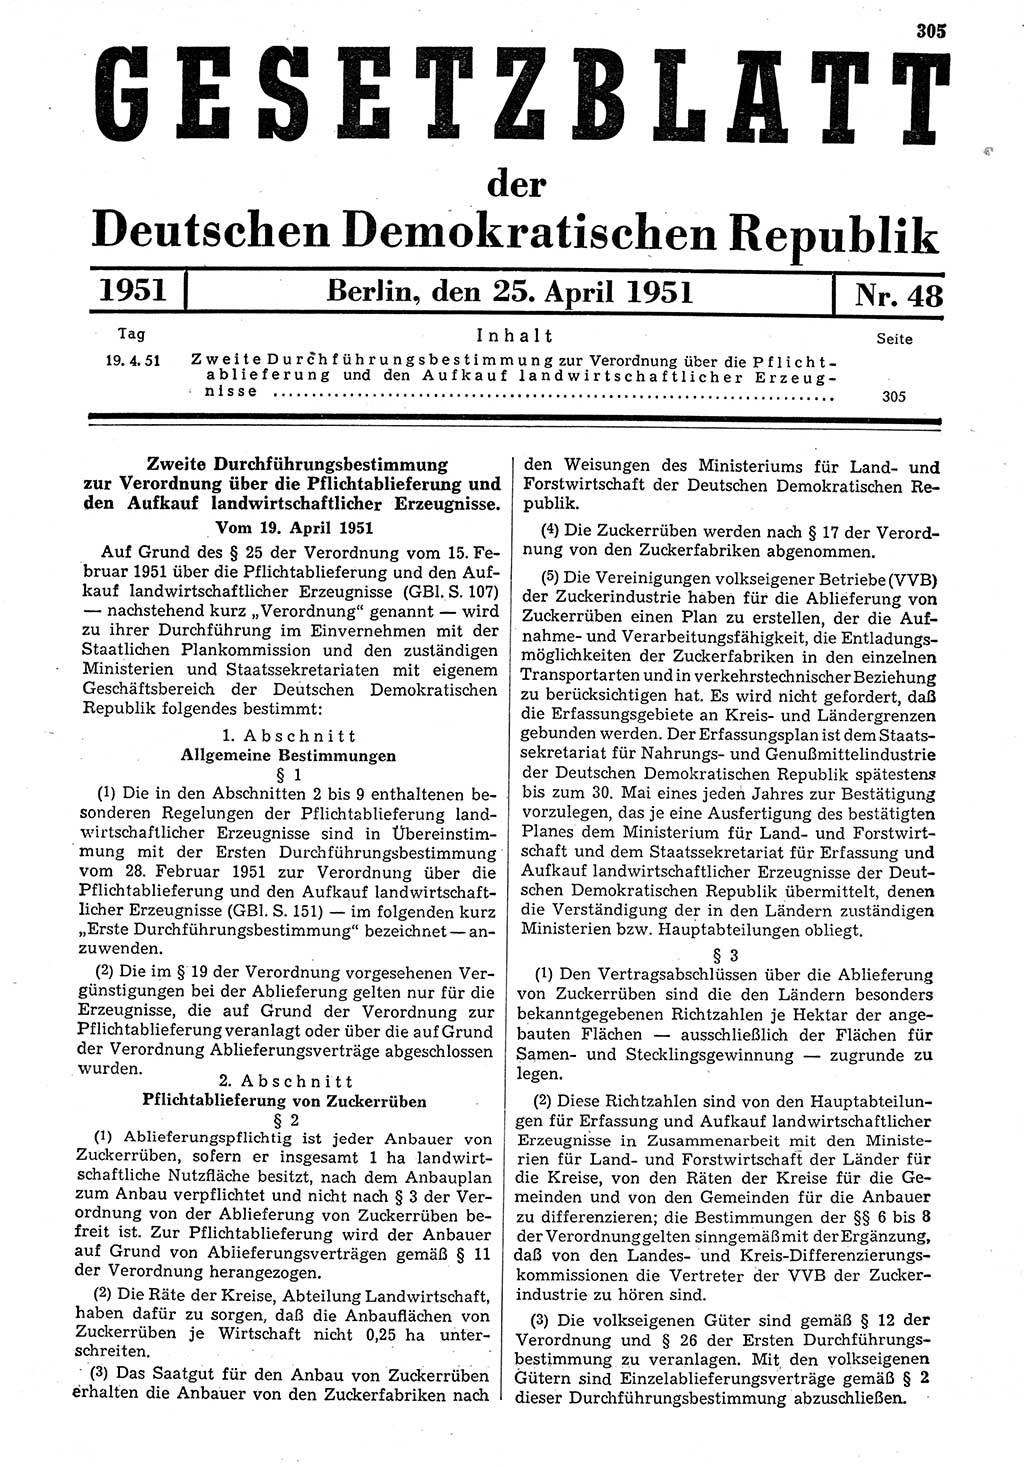 Gesetzblatt (GBl.) der Deutschen Demokratischen Republik (DDR) 1951, Seite 305 (GBl. DDR 1951, S. 305)